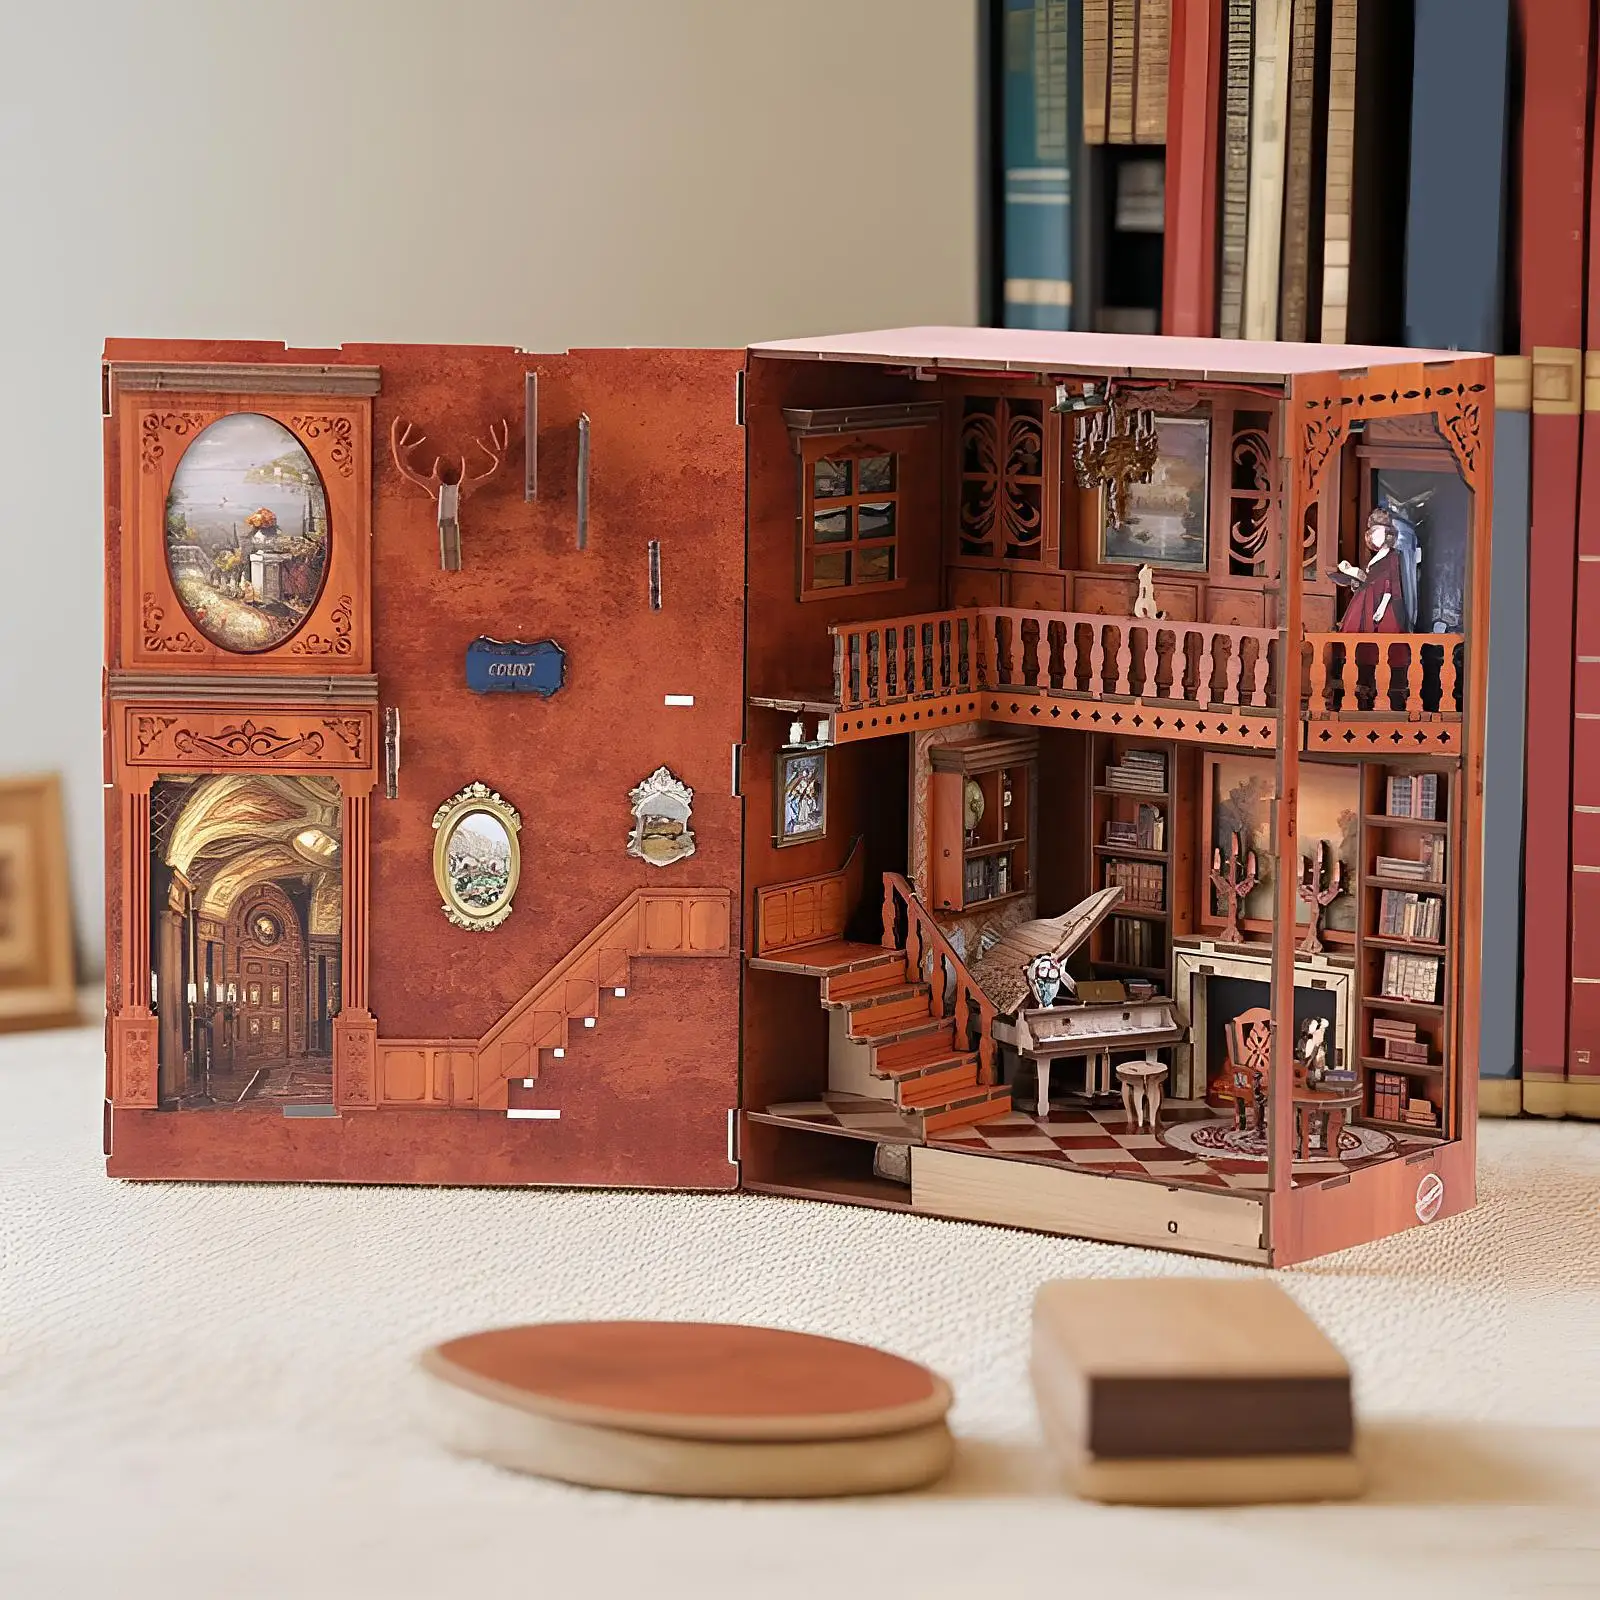 

Сделай Сам миниатюрный кукольный домик книжные комплекты со встроенным декором для комнаты книжная полка декор для подростков девочек детей подарки на день рождения